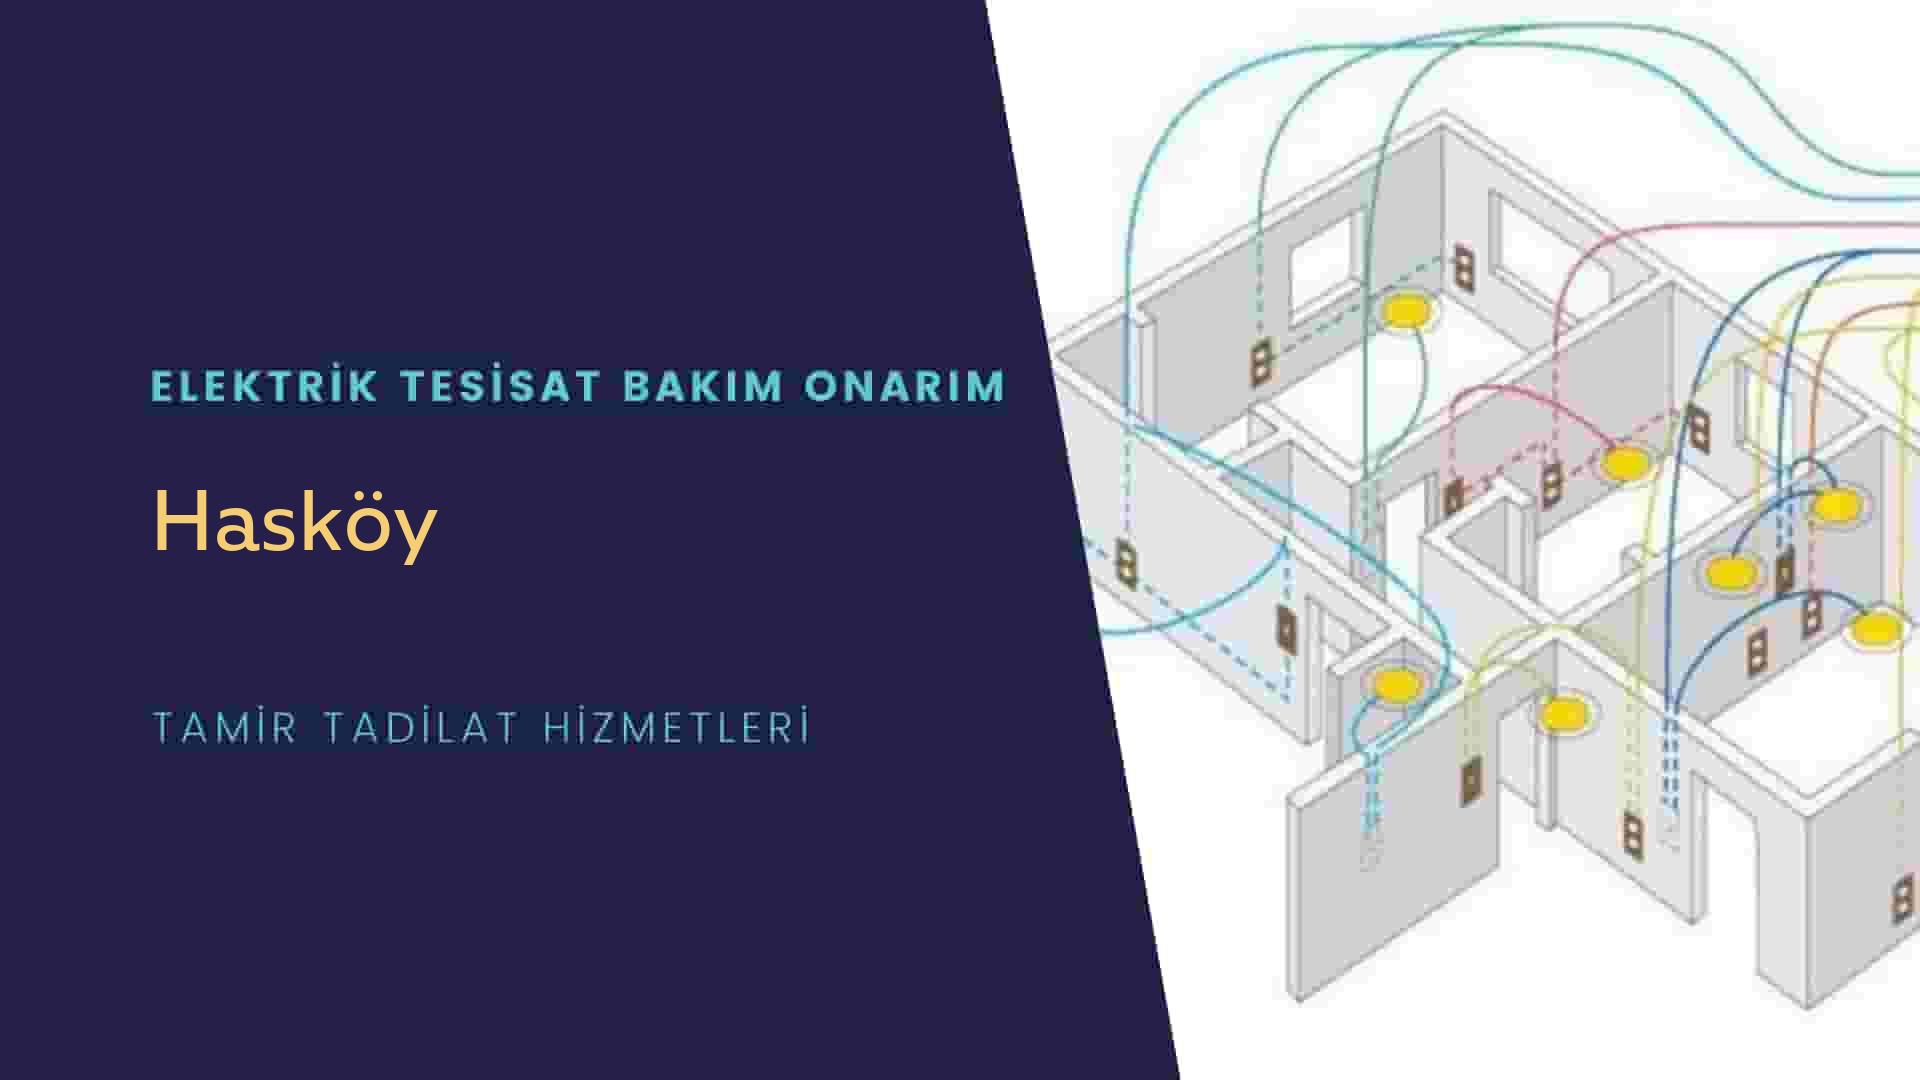 Hasköy'de elektrik tesisatı ustalarımı arıyorsunuz doğru adrestenizi Hasköy elektrik tesisatı ustalarımız 7/24 sizlere hizmet vermekten mutluluk duyar.